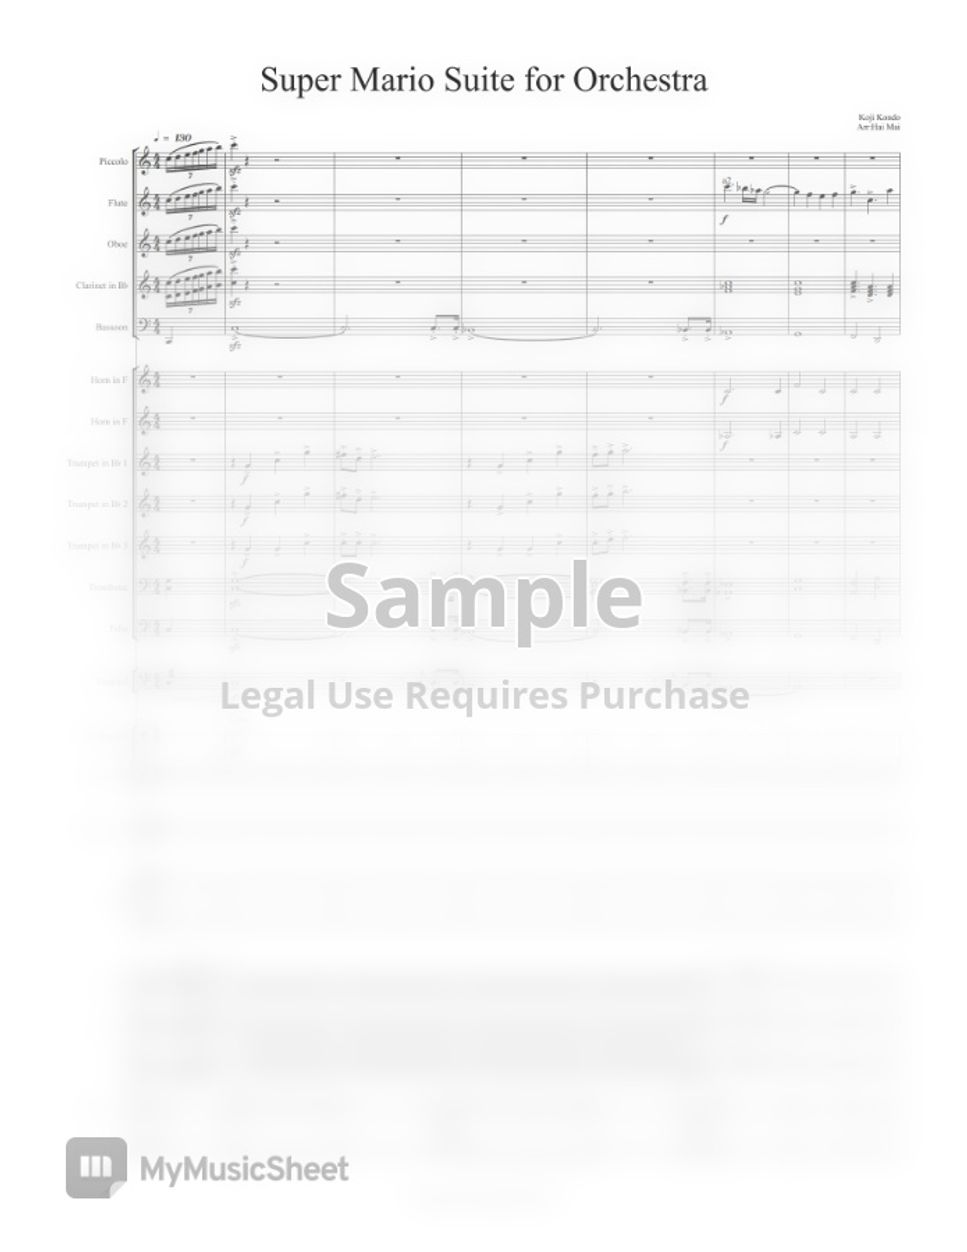 Koji Kondo - Super Mario Suite for Orchestra - Score and Part by Hai Mai